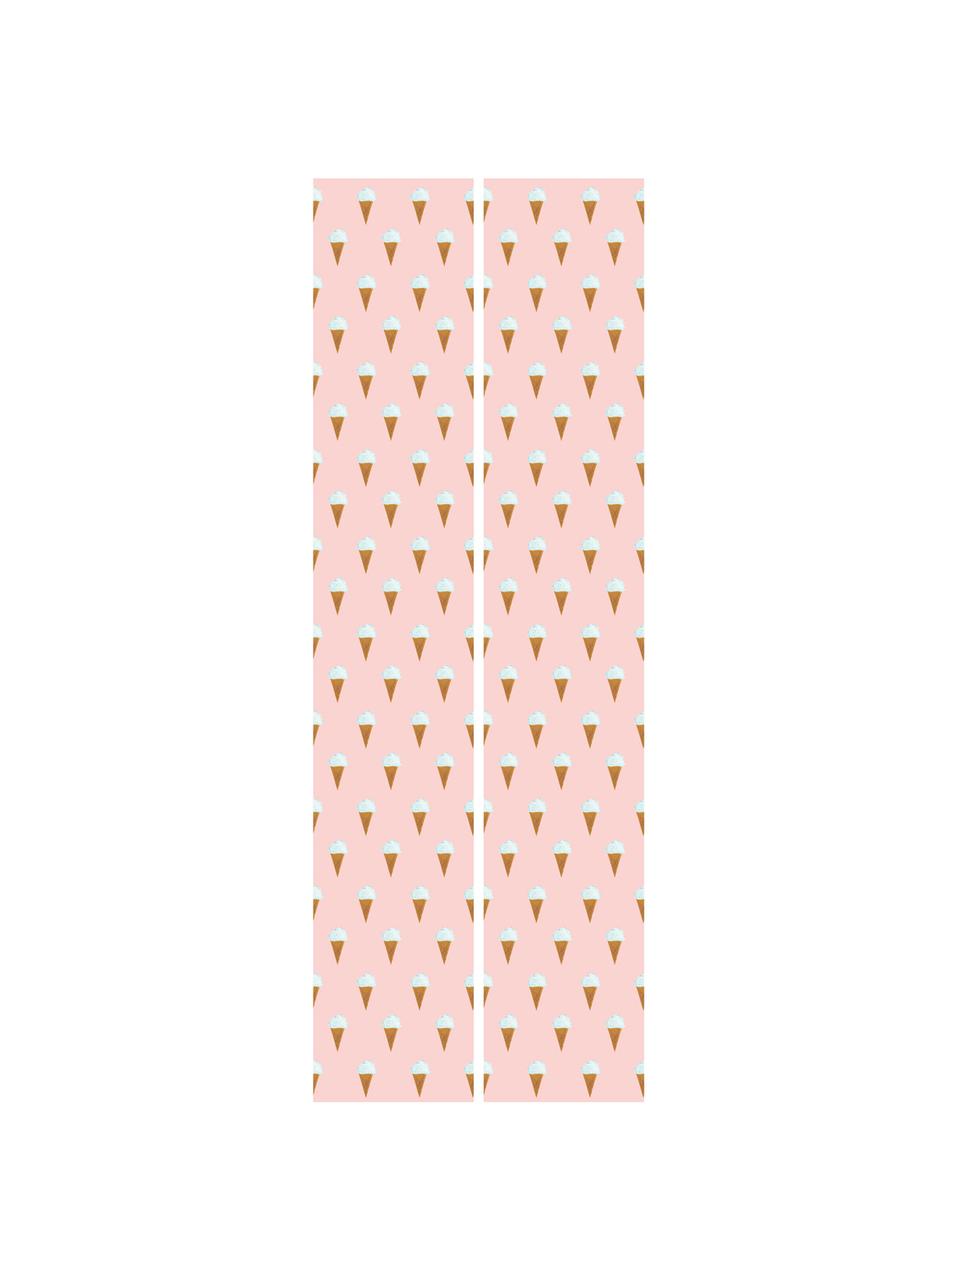 Behang Ice Cream, Papier, mat, 165 g/m², Roze, wit, bruin, Ø 97 x H 280 cm